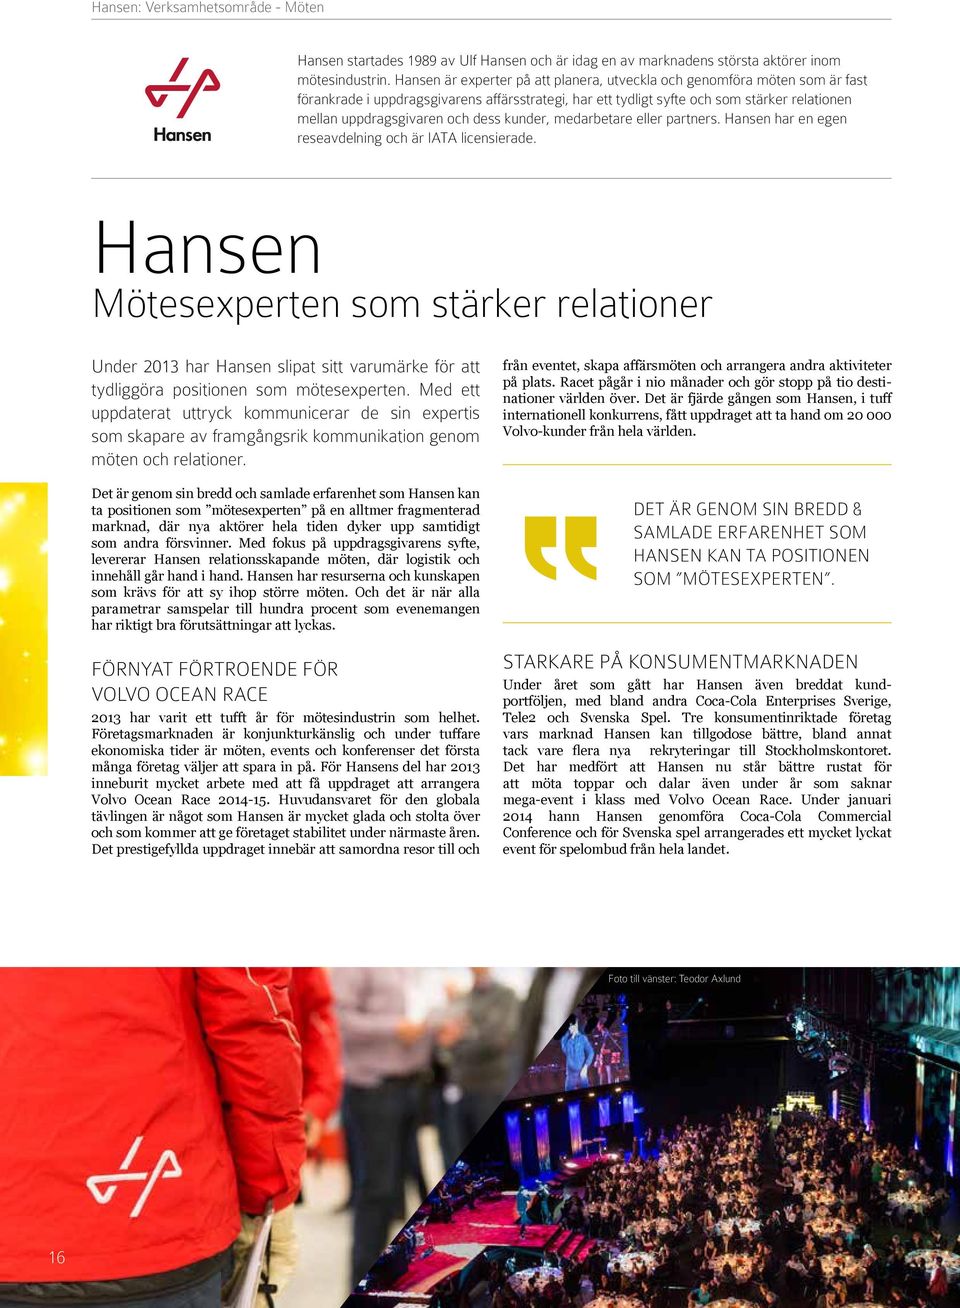 dess kunder, medarbetare eller partners. Hansen har en egen reseavdelning och är IATA licensierade.